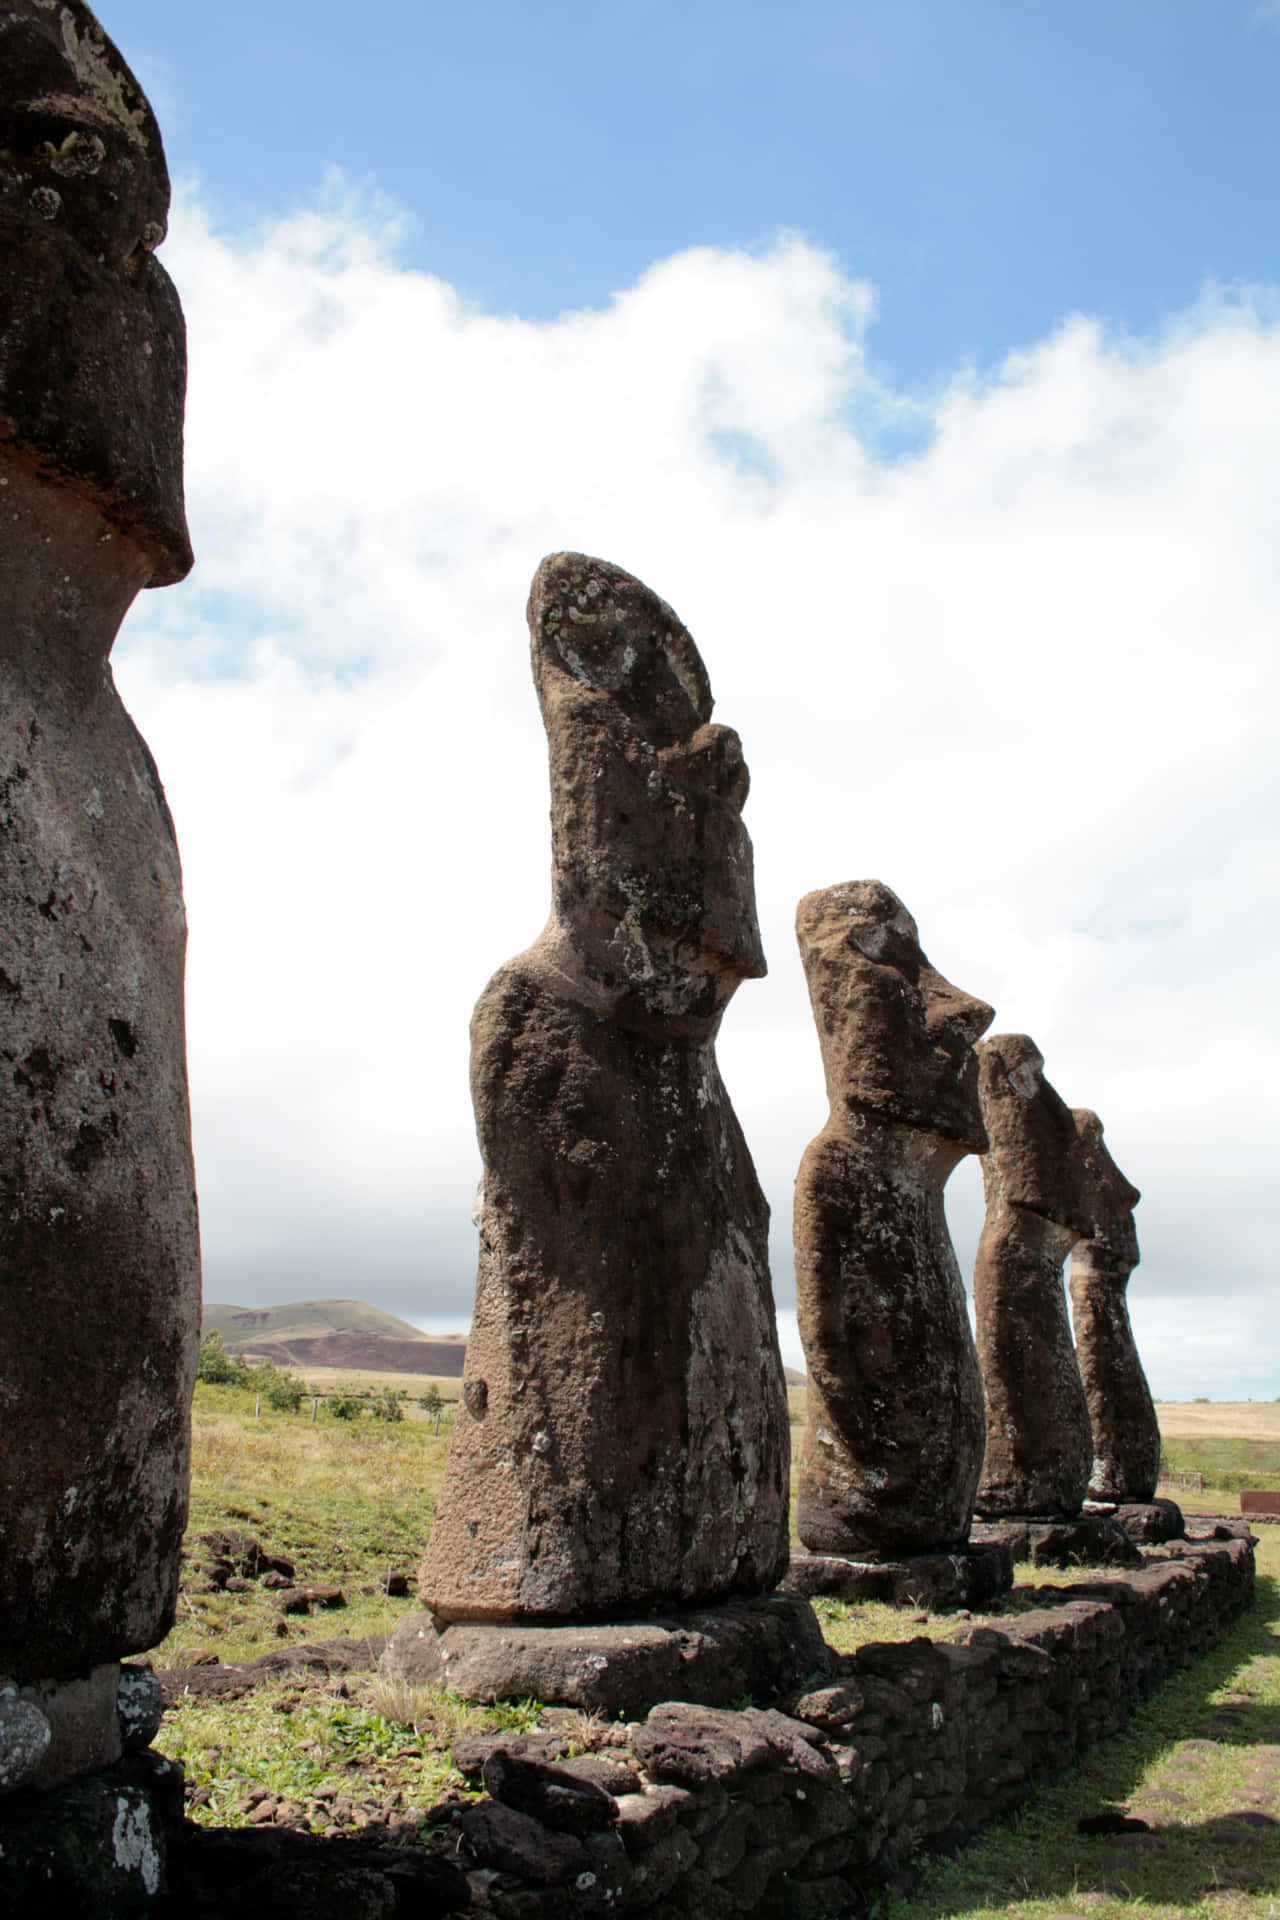 Porträtvon Moai-figuren, Die Nach Oben Schauen. Wallpaper